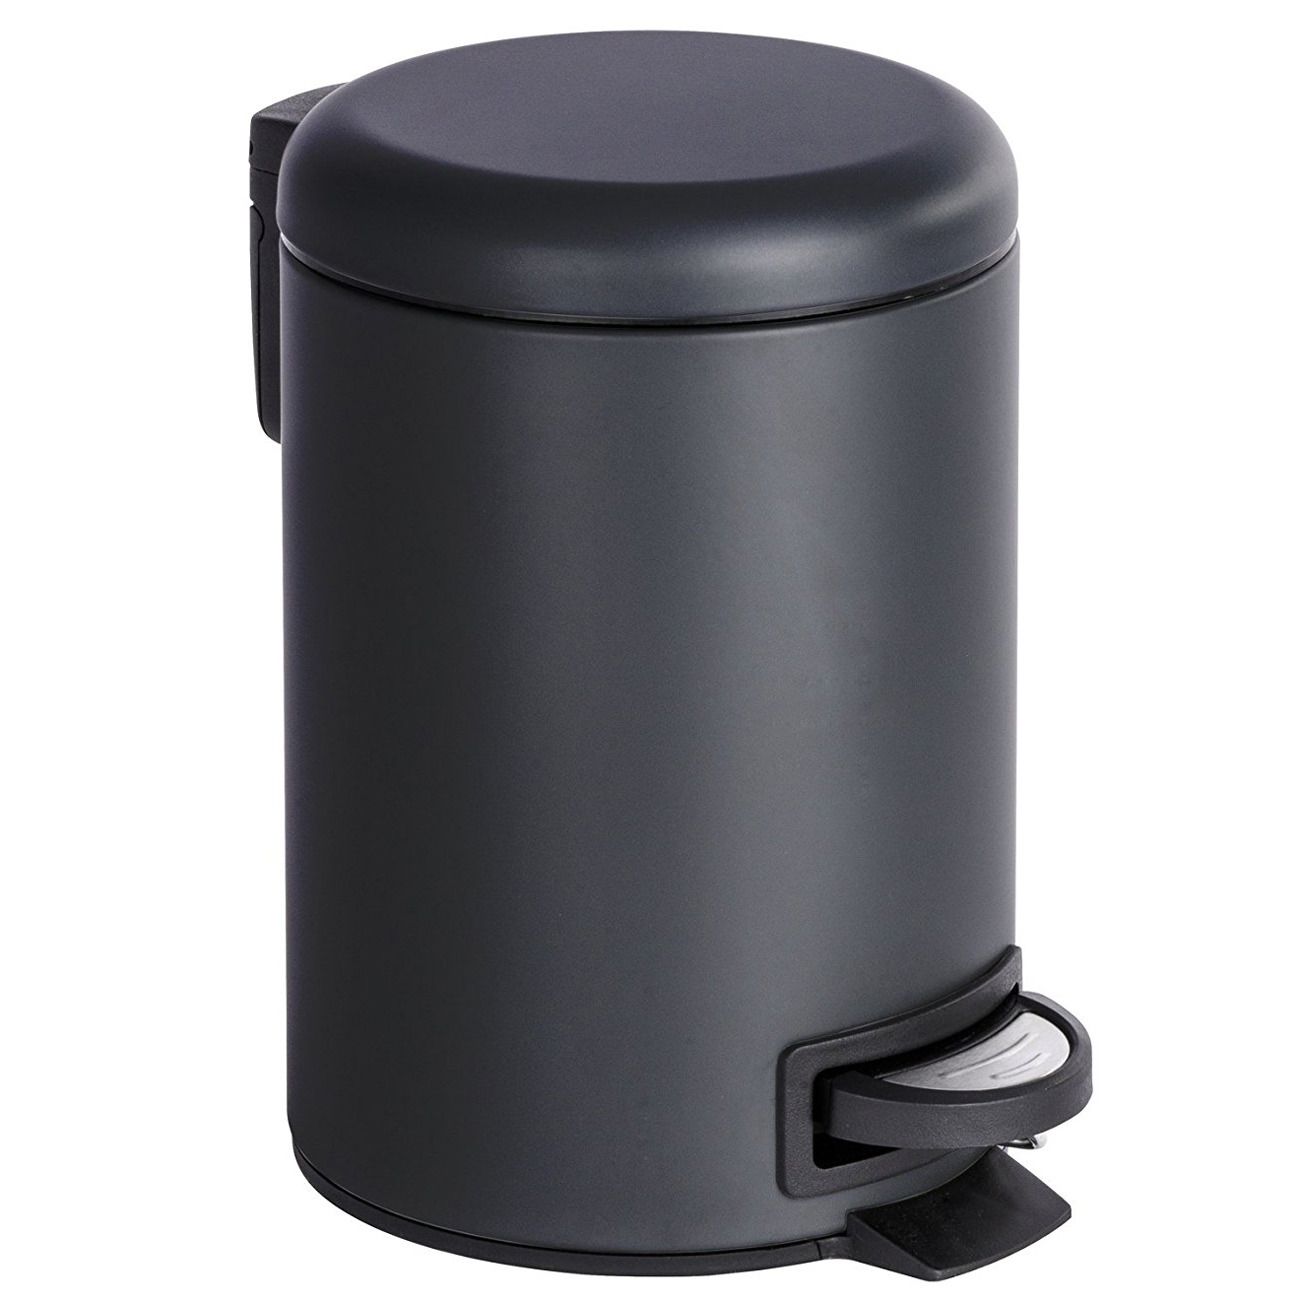 Koupelnový koš na odpadky v černé barvě LEMAN MATT 3 l, 25 x 23 cm, WENKO - EDAXO.CZ s.r.o.